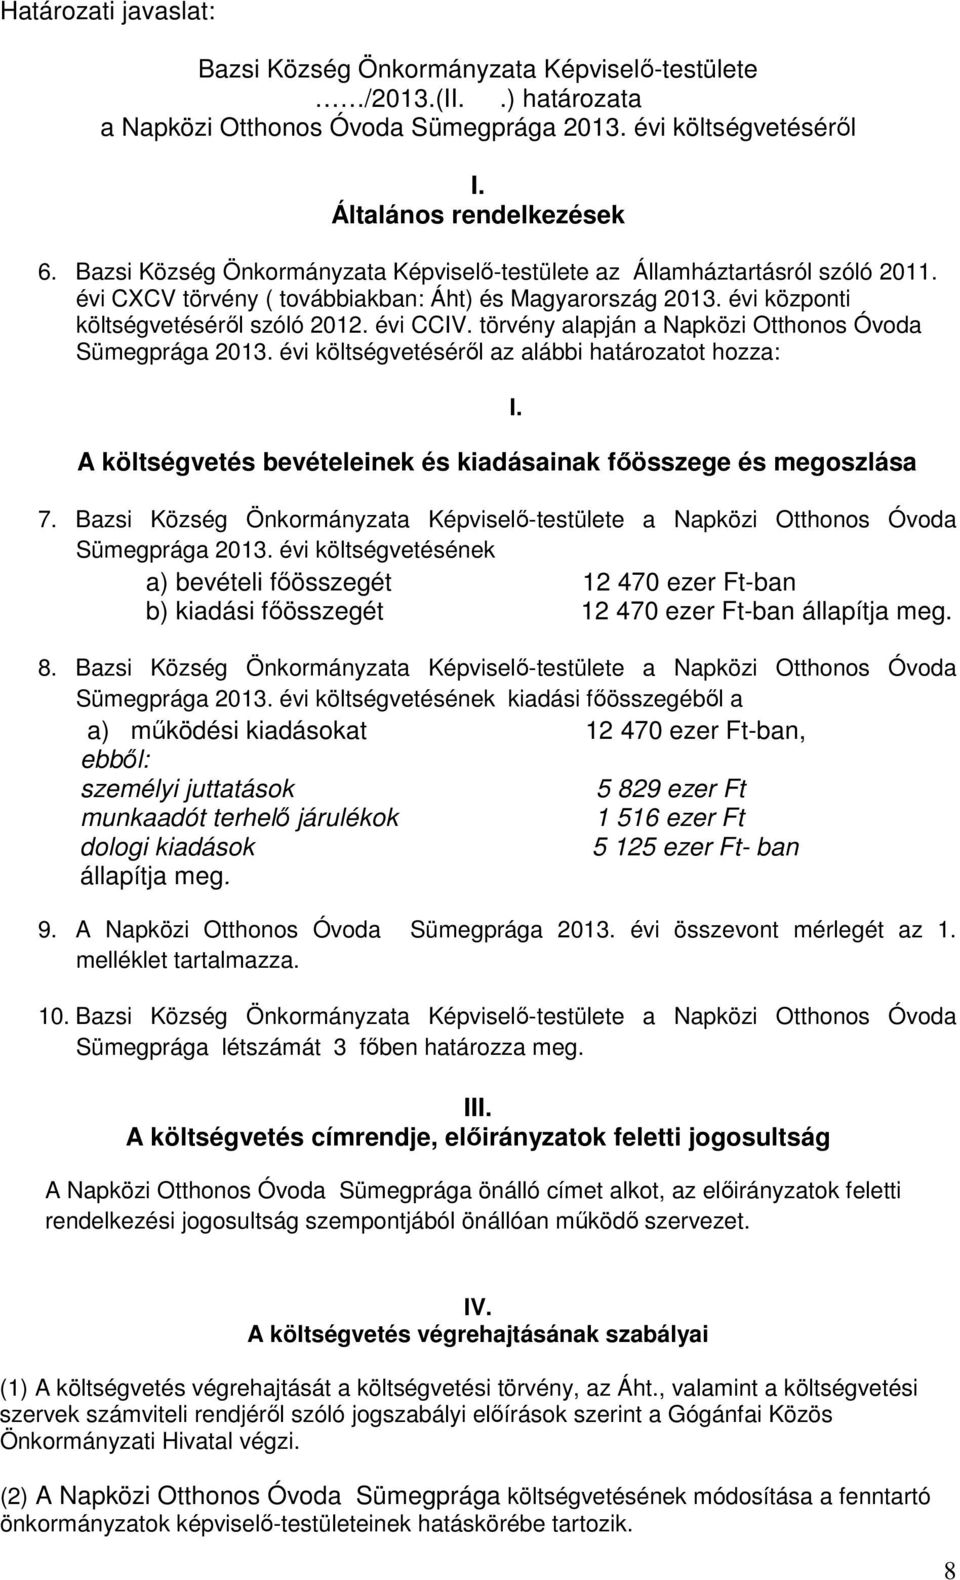 törvény alapján a Napközi Otthonos Óvoda Sümegprága 2013. évi költségvetéséről az alábbi határozatot hozza: A költségvetés bevételeinek és kiadásainak főösszege és megoszlása 7.